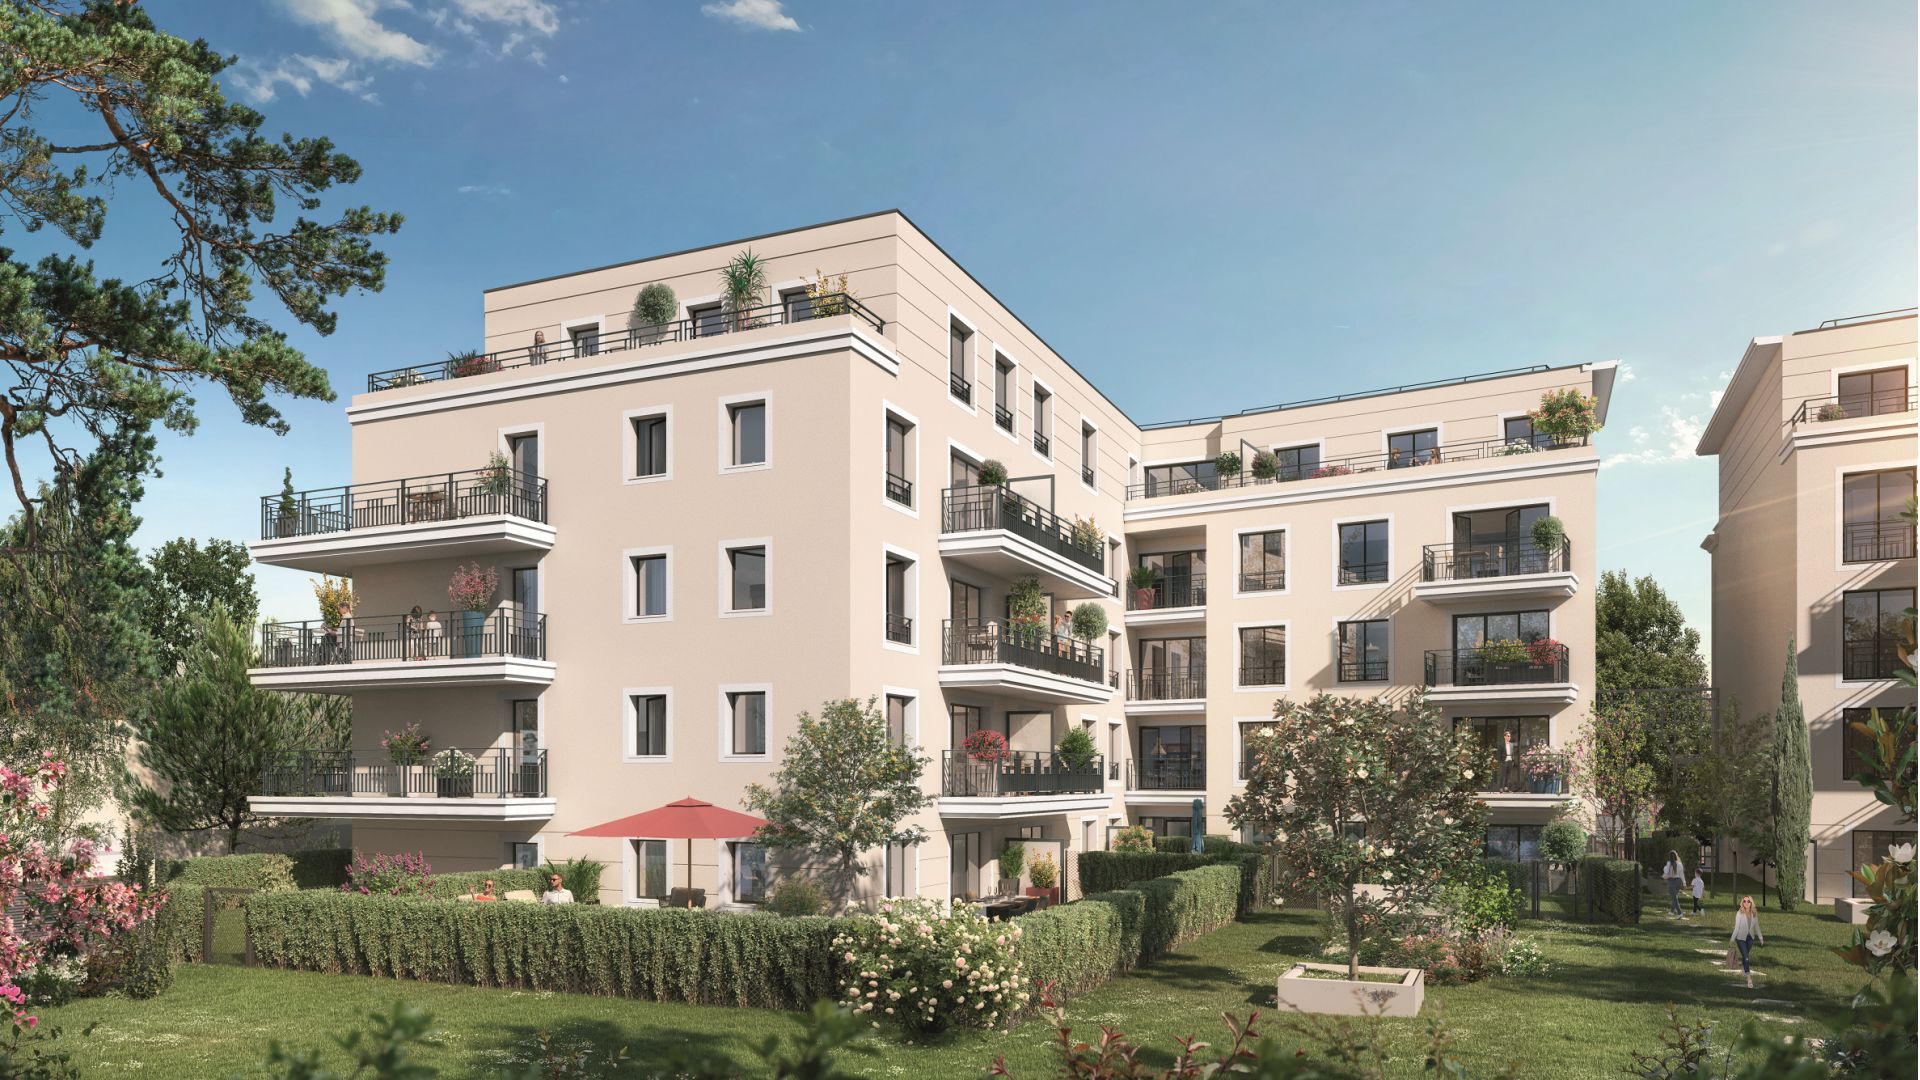 Greencity immobilier - achat appartements neufs du T1 au T5 - Résidence Les Jardins de l'Alma - 94100 Saint-Maur-des-Fossés